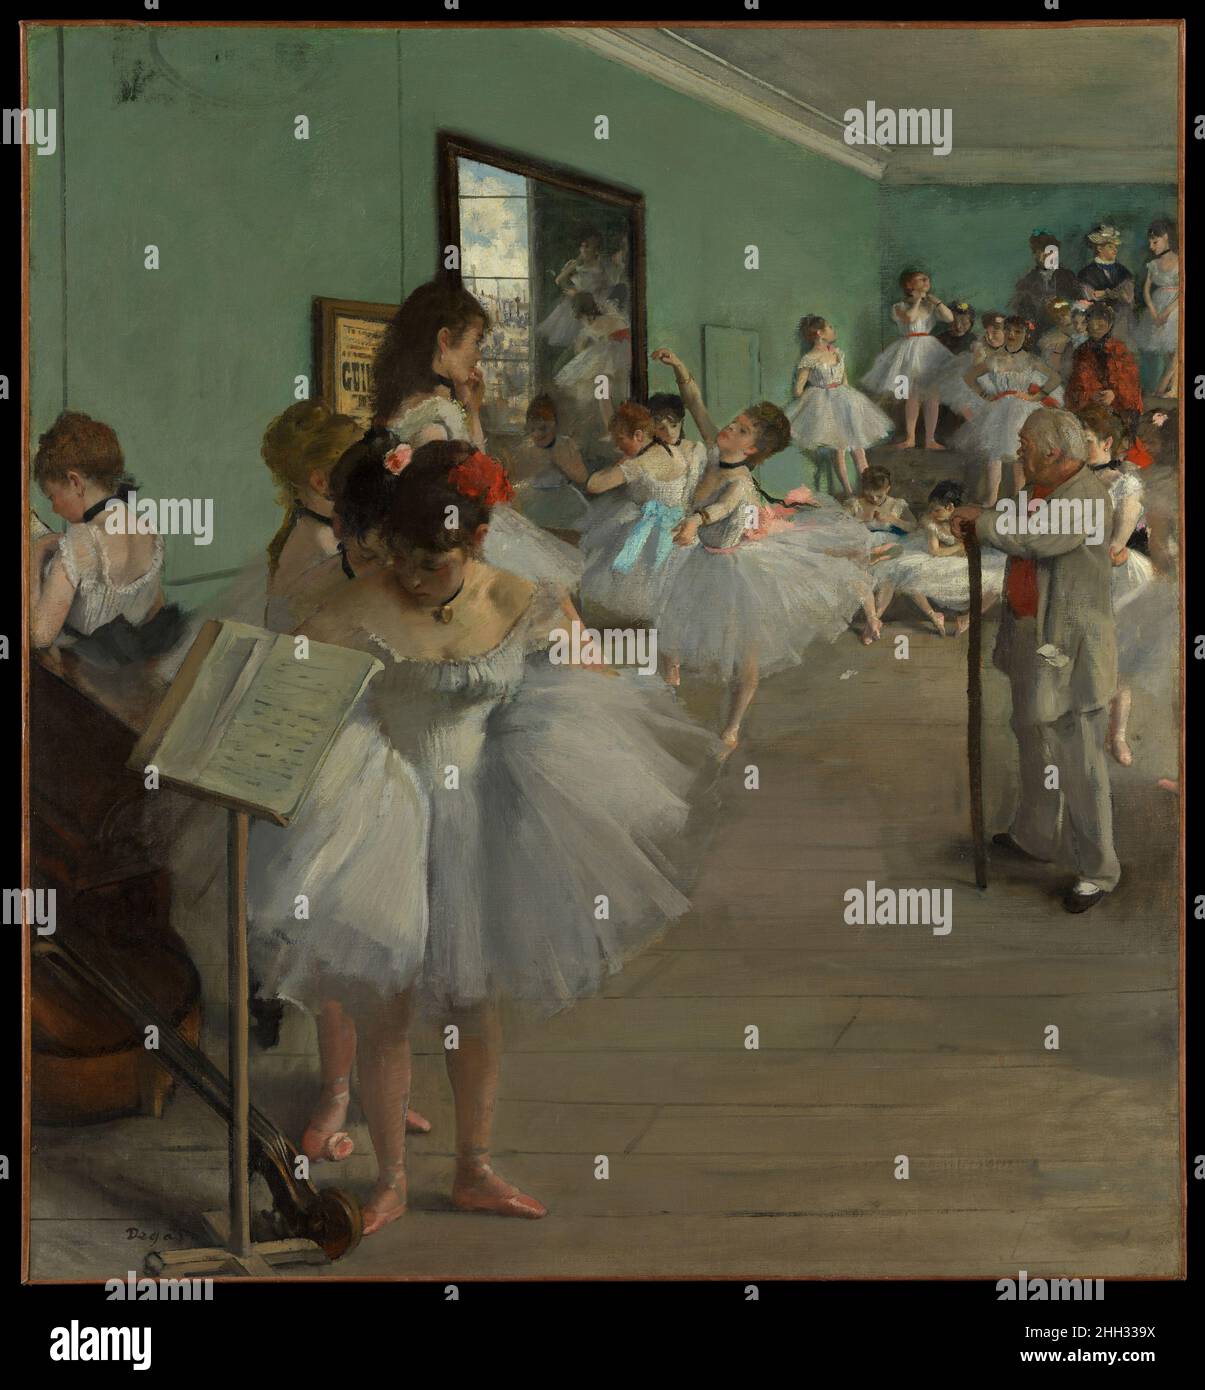 La classe de danse 1874 Edgar Degas French cette œuvre et sa variante au  Musée d'Orsay, Paris, représentent les peintures Degas les plus ambitieuses  consacrées au thème de la danse.Quelque vingt-quatre femmes,